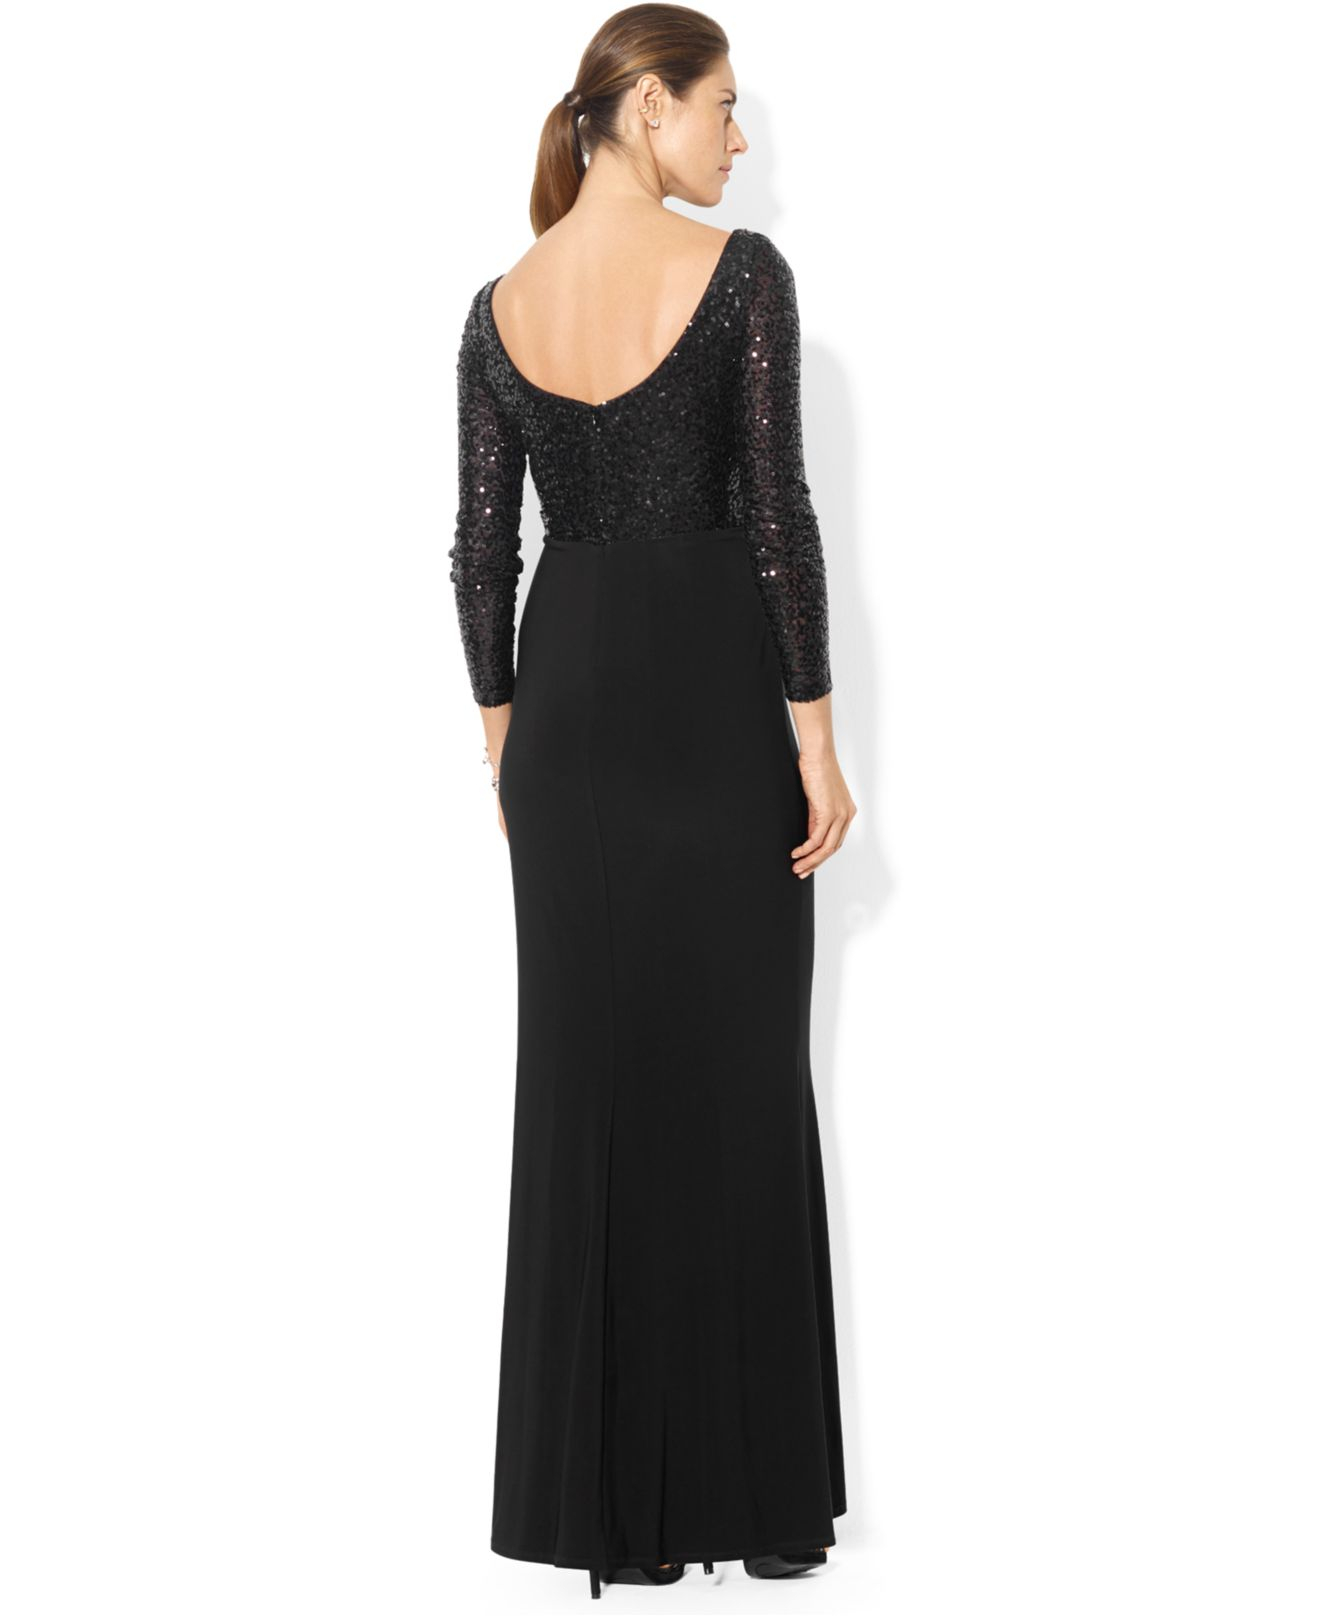 Lauren by Ralph Lauren Long-Sleeve Sequin Gown in Black | Lyst